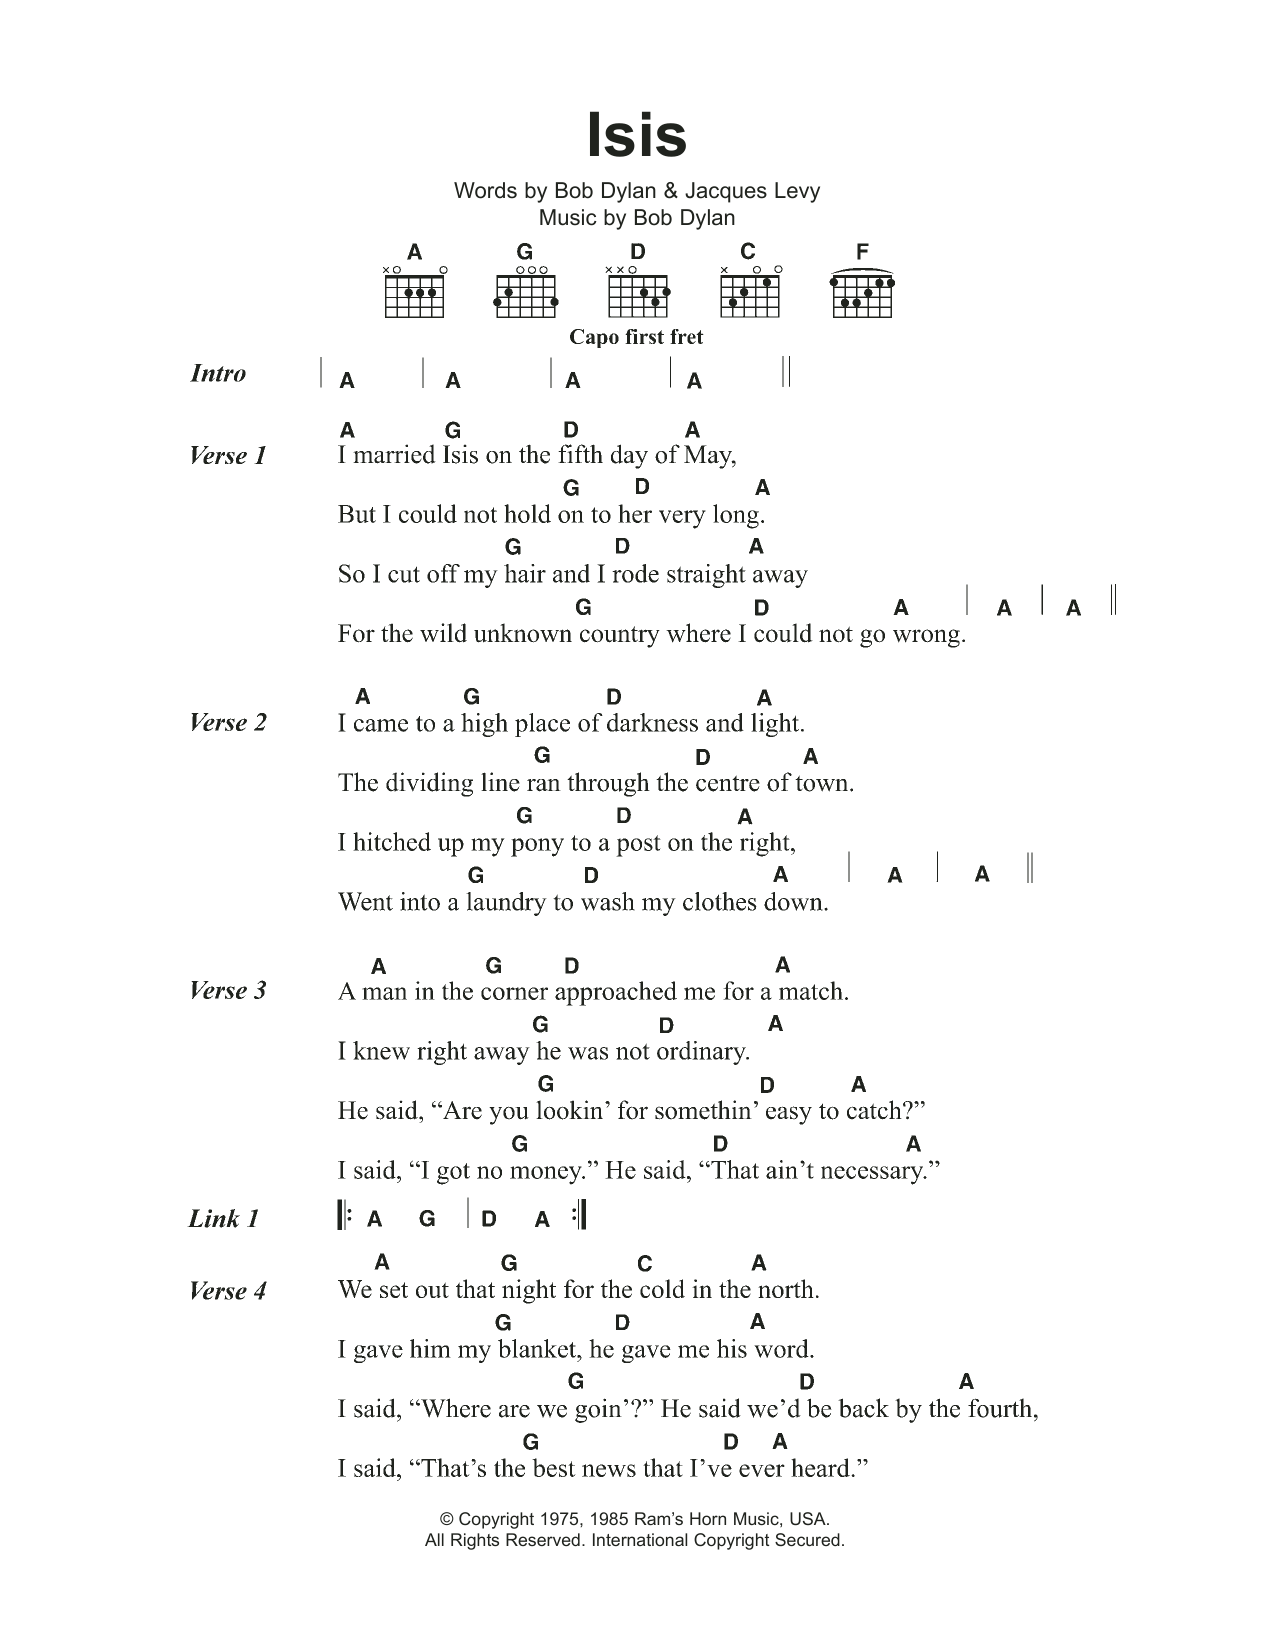 Bob Dylan Isis Sheet Music Notes & Chords for Ukulele Lyrics & Chords - Download or Print PDF